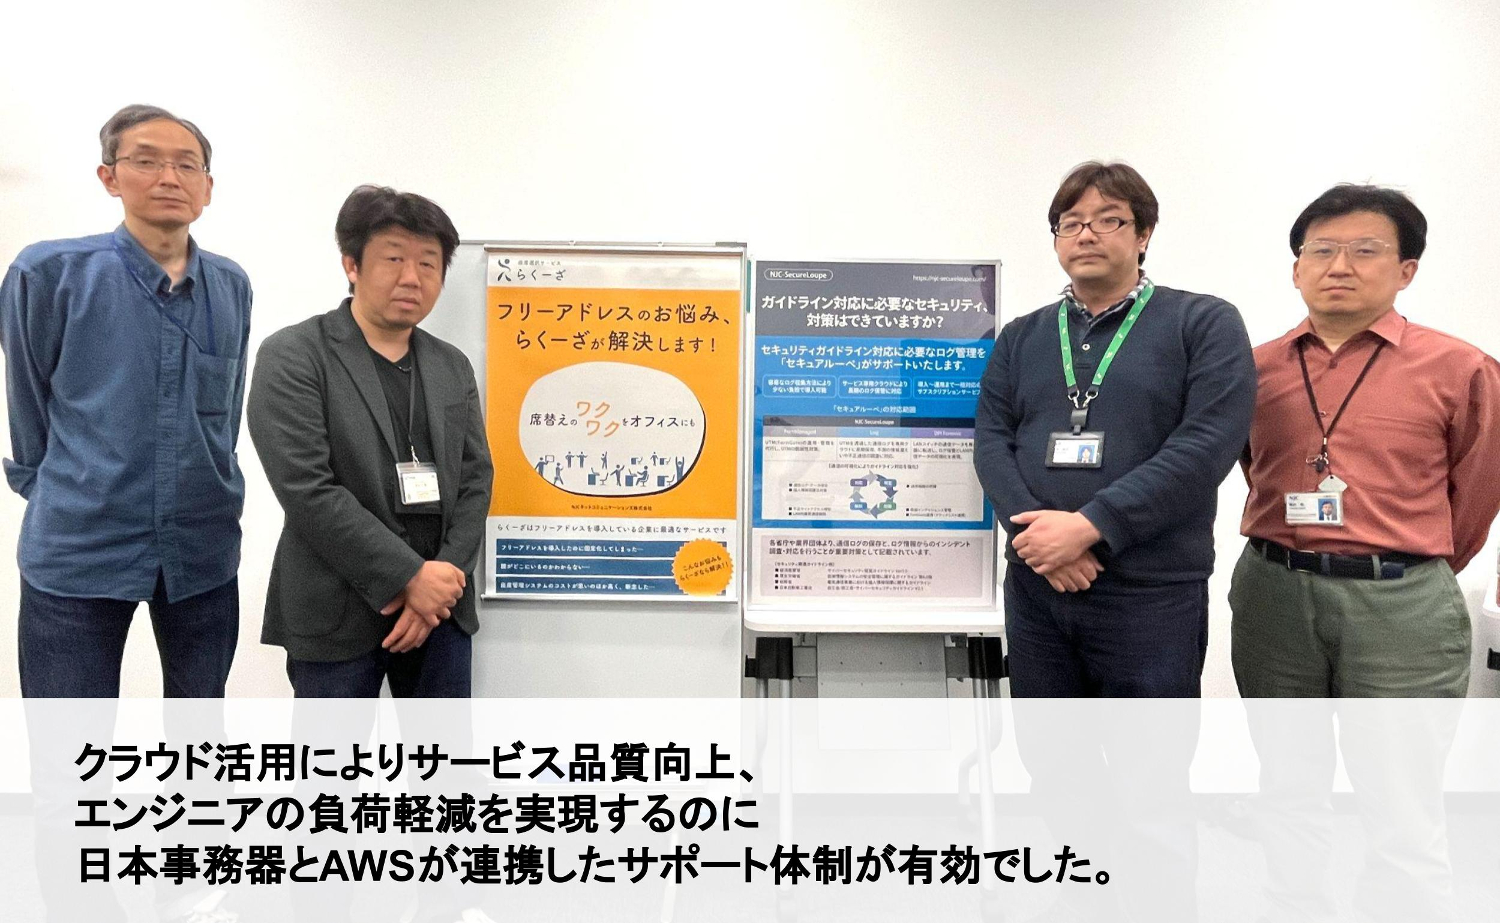 クラウド活用によりサービス品質向上、エンジニアの負荷軽減を実現するのに 日本事務器とAWSが連携したサポート体制が有効でした。